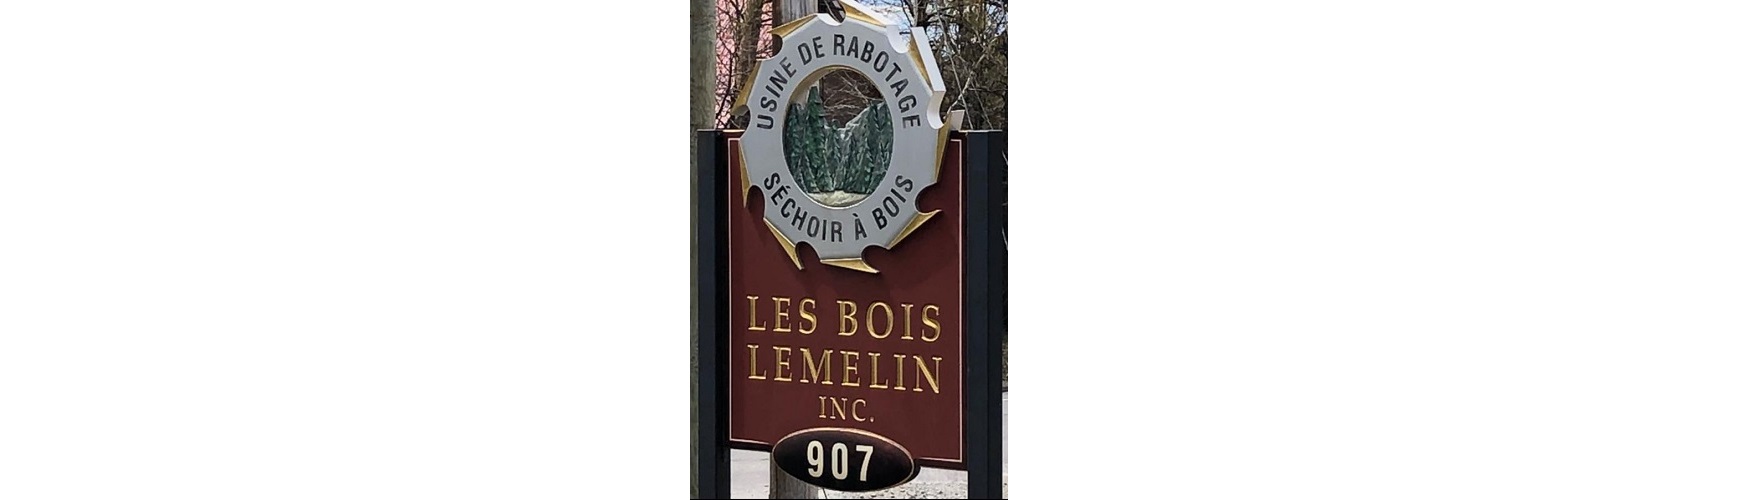 Acquisition of Les Bois Lemelin Inc - Groupe Lebel inc.